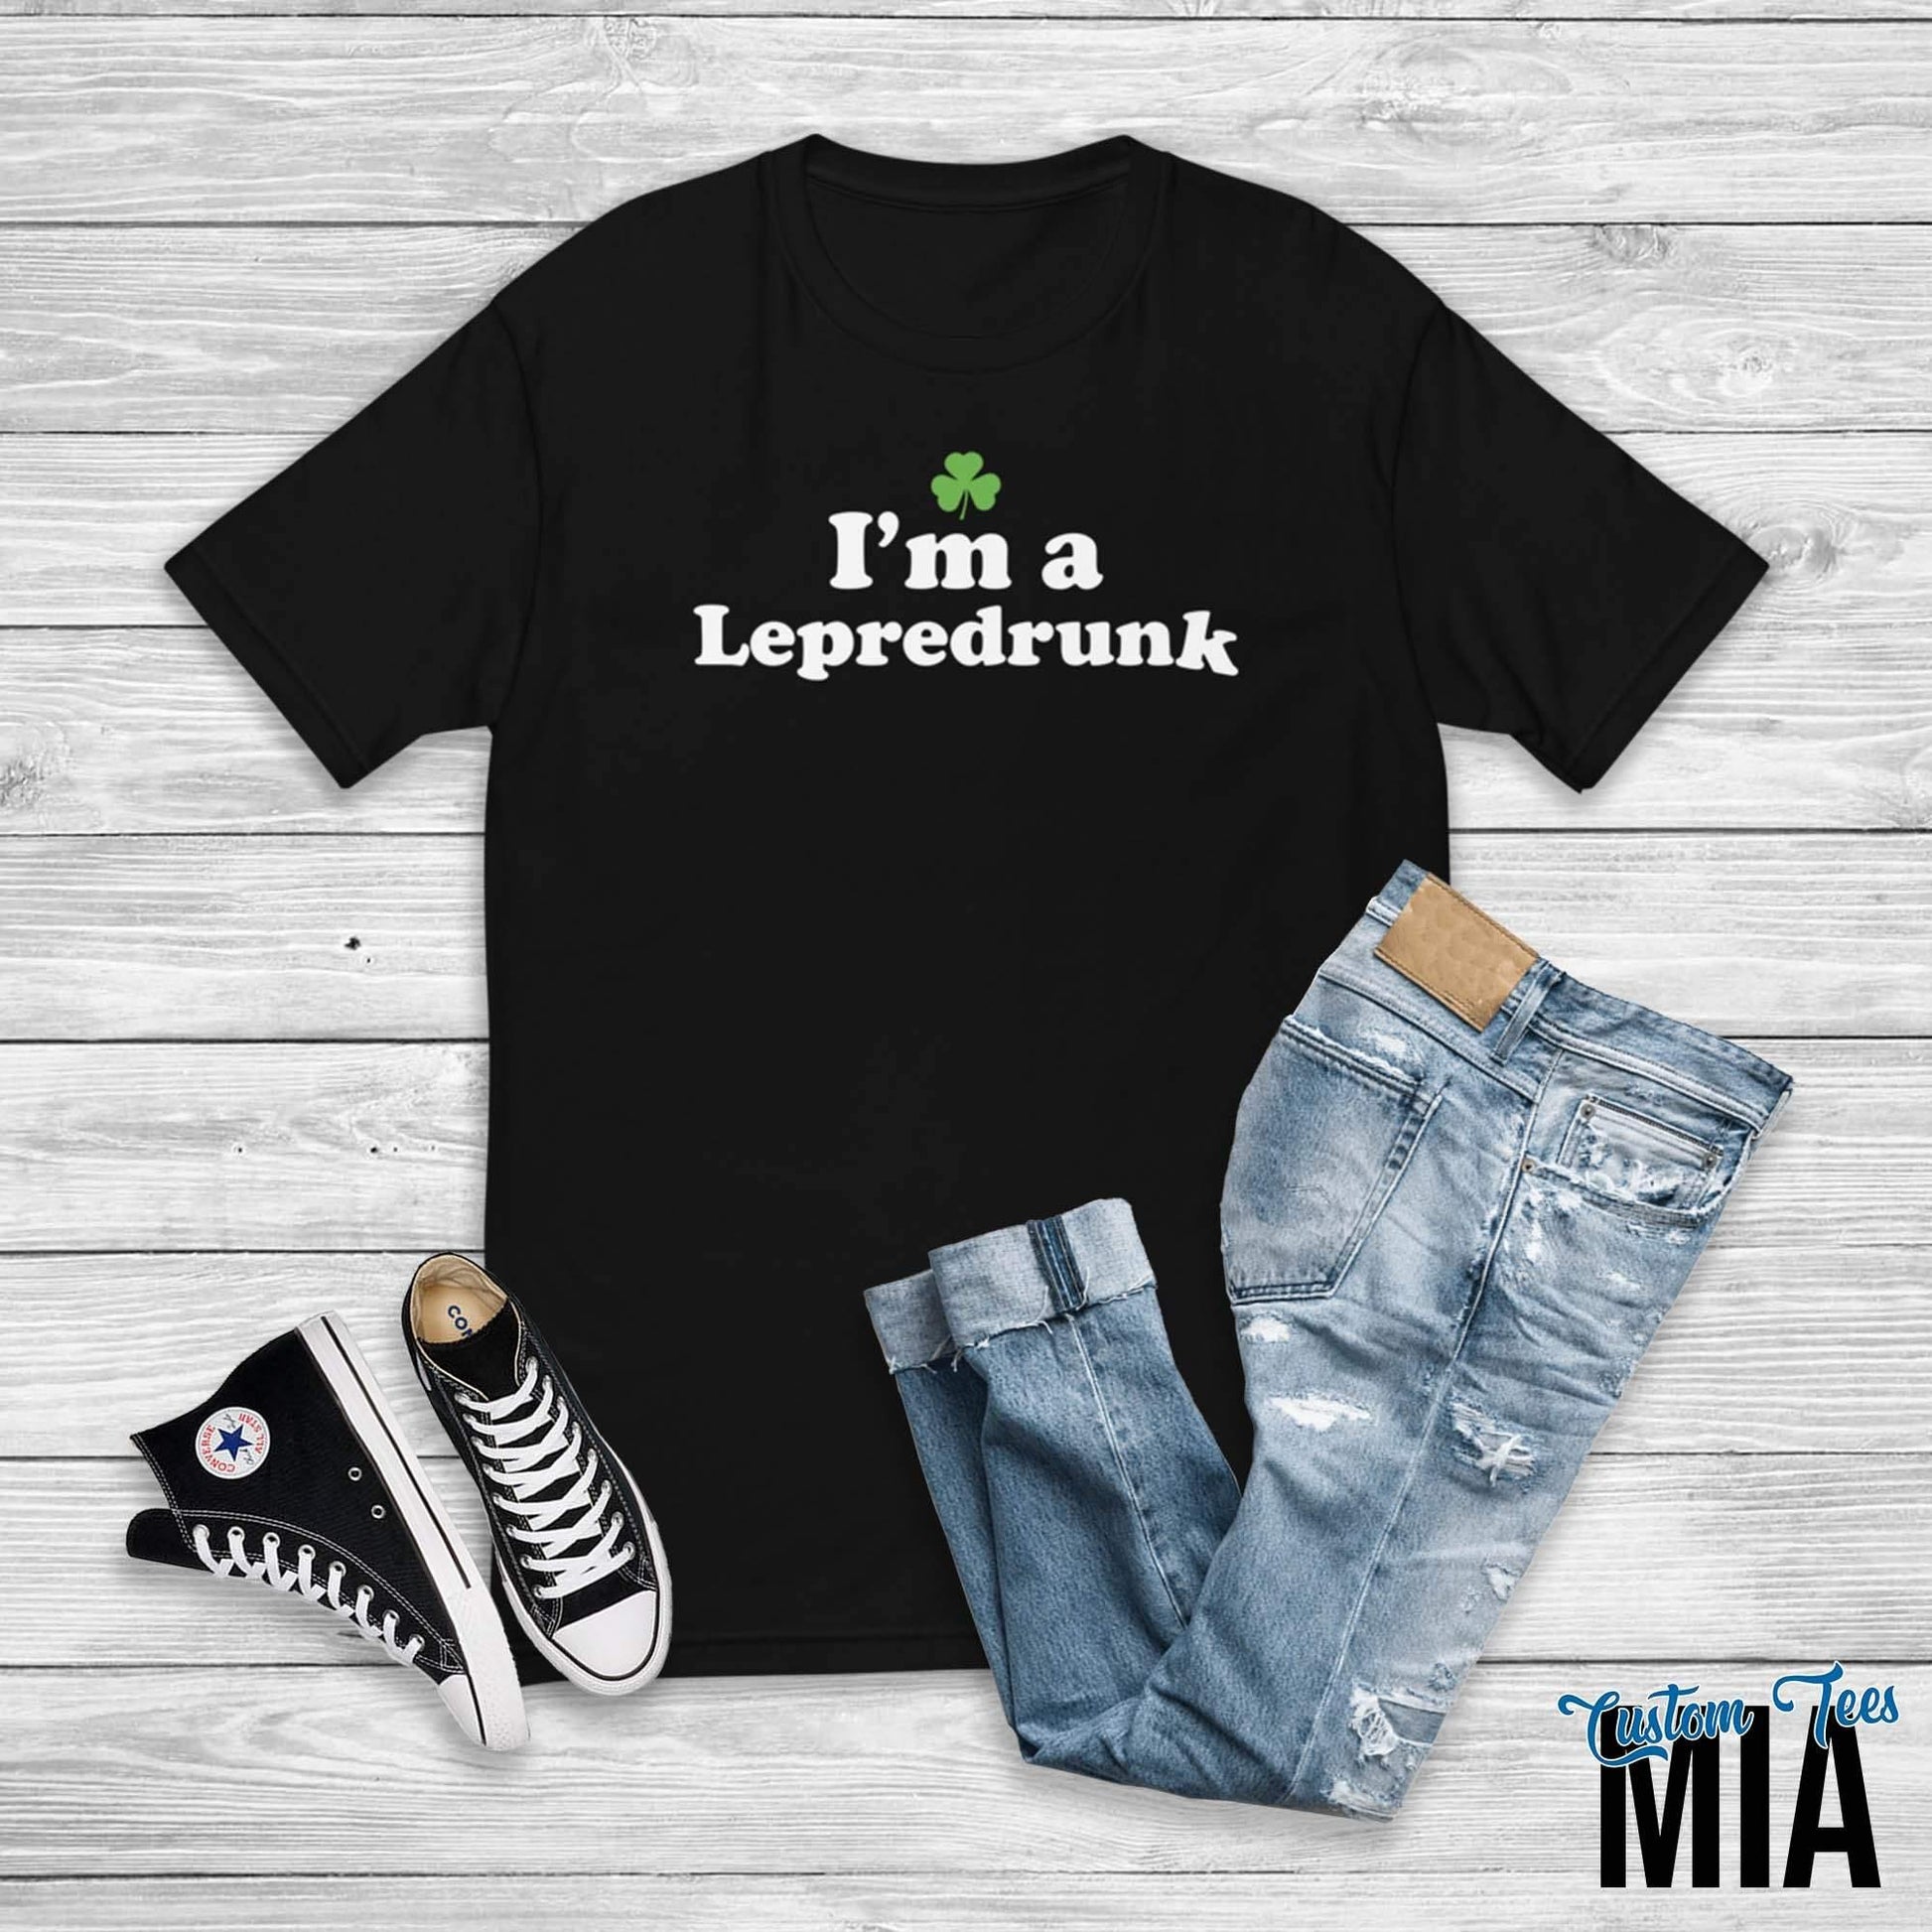 I'm a Lepredrunk Funny St Patricks Day Shirt - Custom Tees MIA